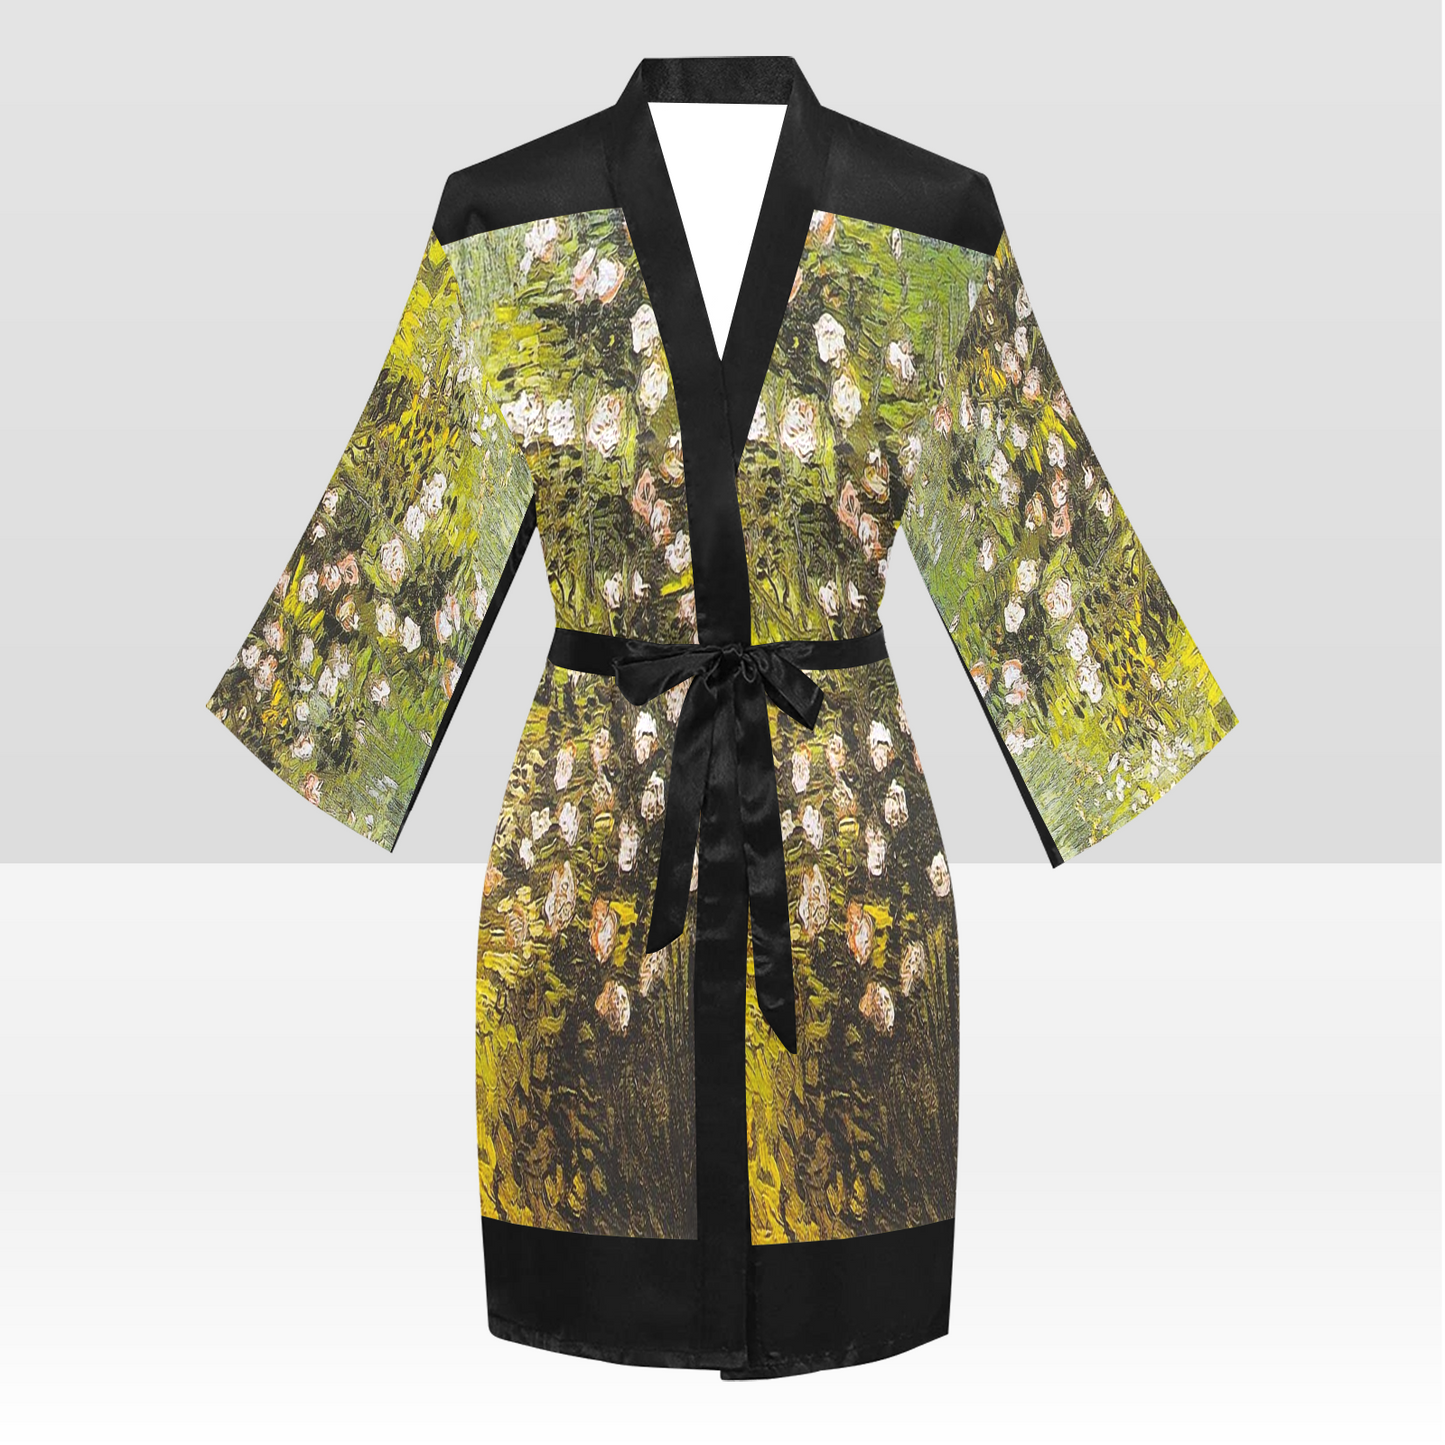 Vintage Floral Kimono Robe, Black or White Trim, Sizes XS to 2XL, Design 05